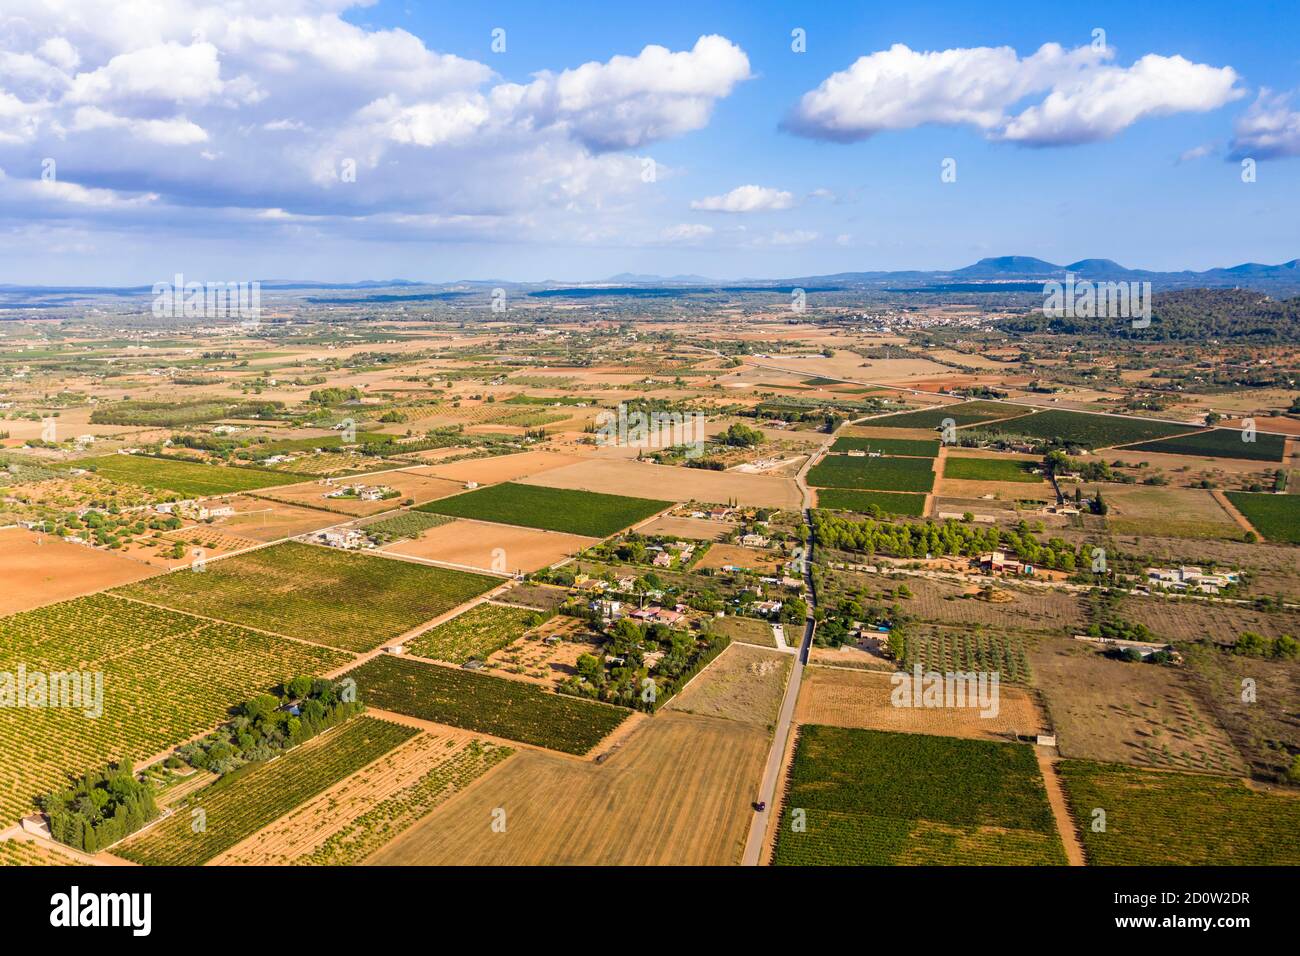 Luftbild, Landwirtschaft, Felder mit Olivenbäumen, in der Nähe von Santa Eugenia und Santa Maria, Mallorca, Balearen, Spanien, Europa Stockfoto